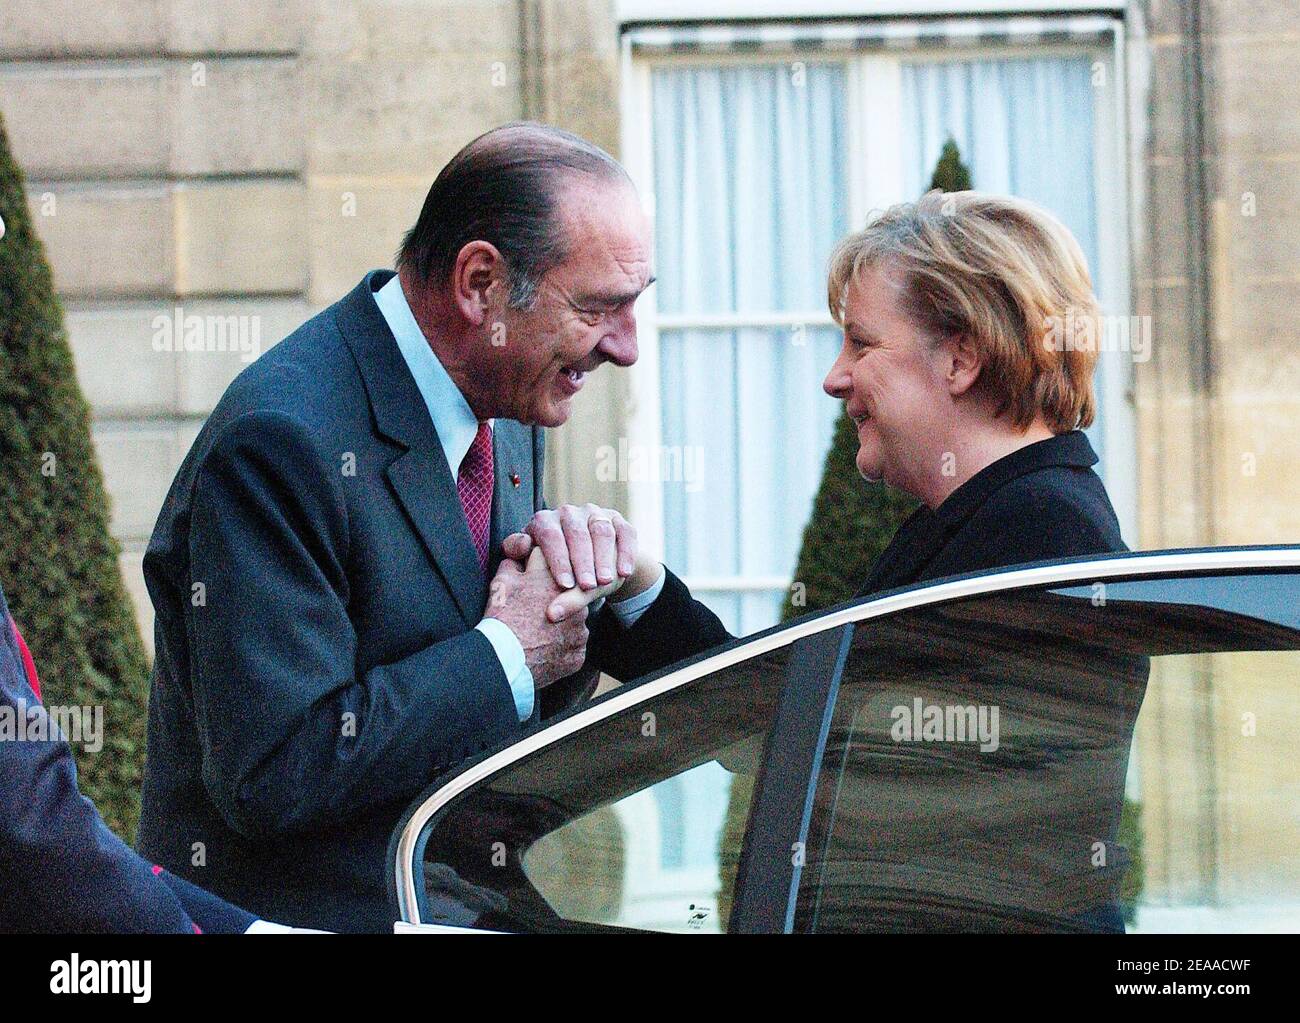 Der französische Präsident Jacques Chirac küsst die Hand der neu gewählten deutschen Bundeskanzlerin Angela Merkel, als sie am 23. November 2005 im Elysee-Palast in Paris, Frankreich, ankommt. Merkel, die konservative Führerin einer seltenen links-rechts-Koalition in Deutschland, wurde am Dienstag vom bundestag offiziell zur Kanzlerin gewählt. Sie ging in Gespräche mit Chirac, als sie ihren internationalen Bogen als Führer der größten Wirtschaft Europas machte. Paris war ihr erstes ausländisches Ziel als Staatschef, eine Wahl, die als neue Bestätigung der Stärke der deutsch-französischen Beziehungen im Herzen der Europäischen Union angesehen wurde. Foto Stockfoto